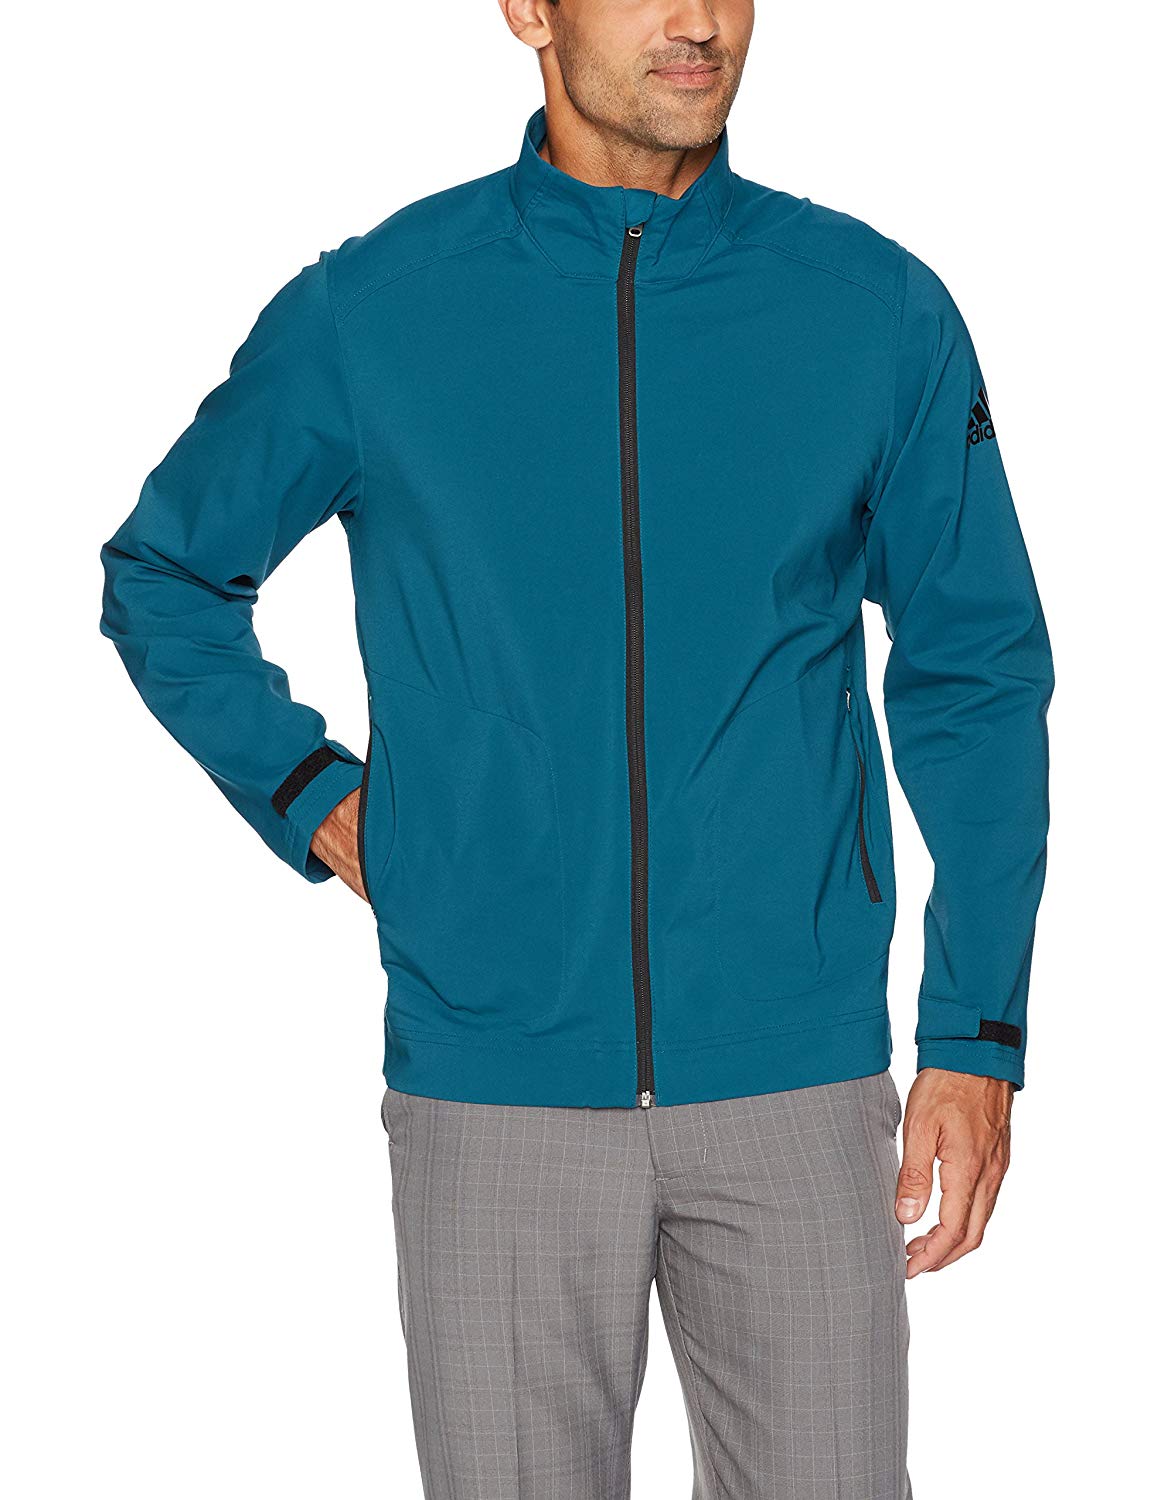 Adidas Mens Climastorm Softshell Full Zip Golf Jackets